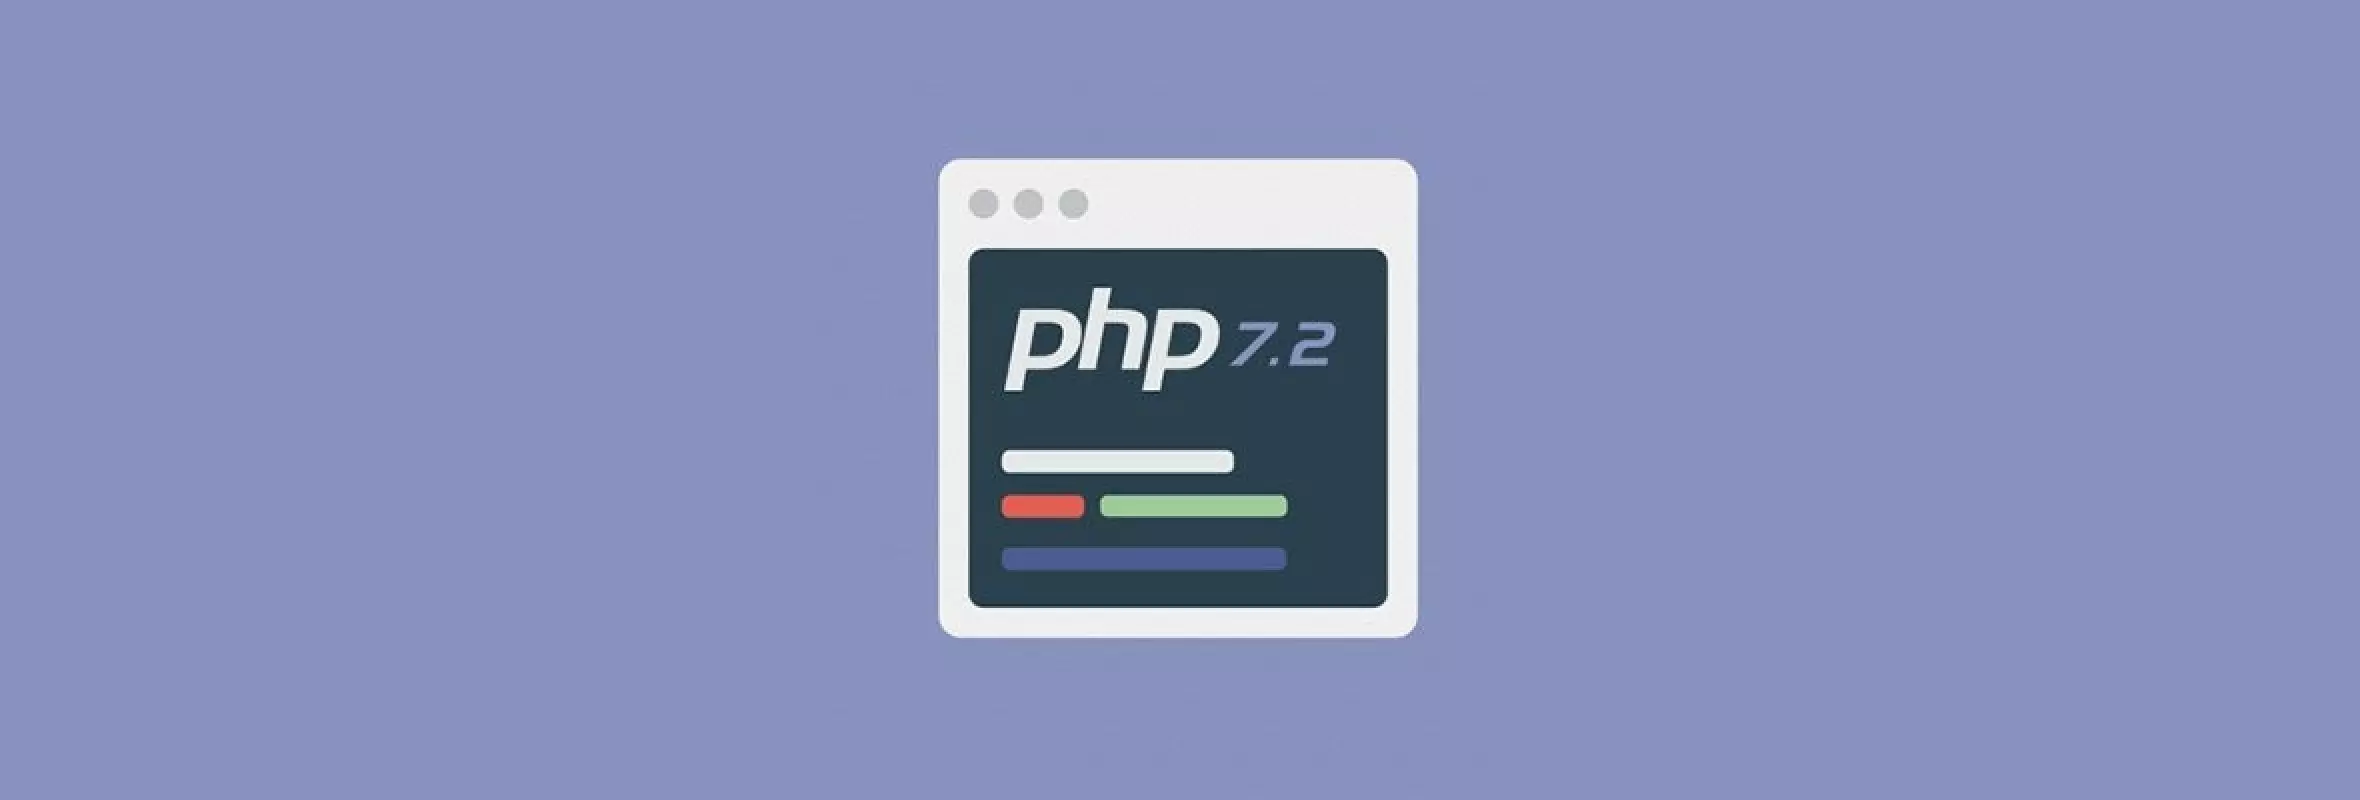 Perchè aggiornare la propria versione di PHP alla 7.2